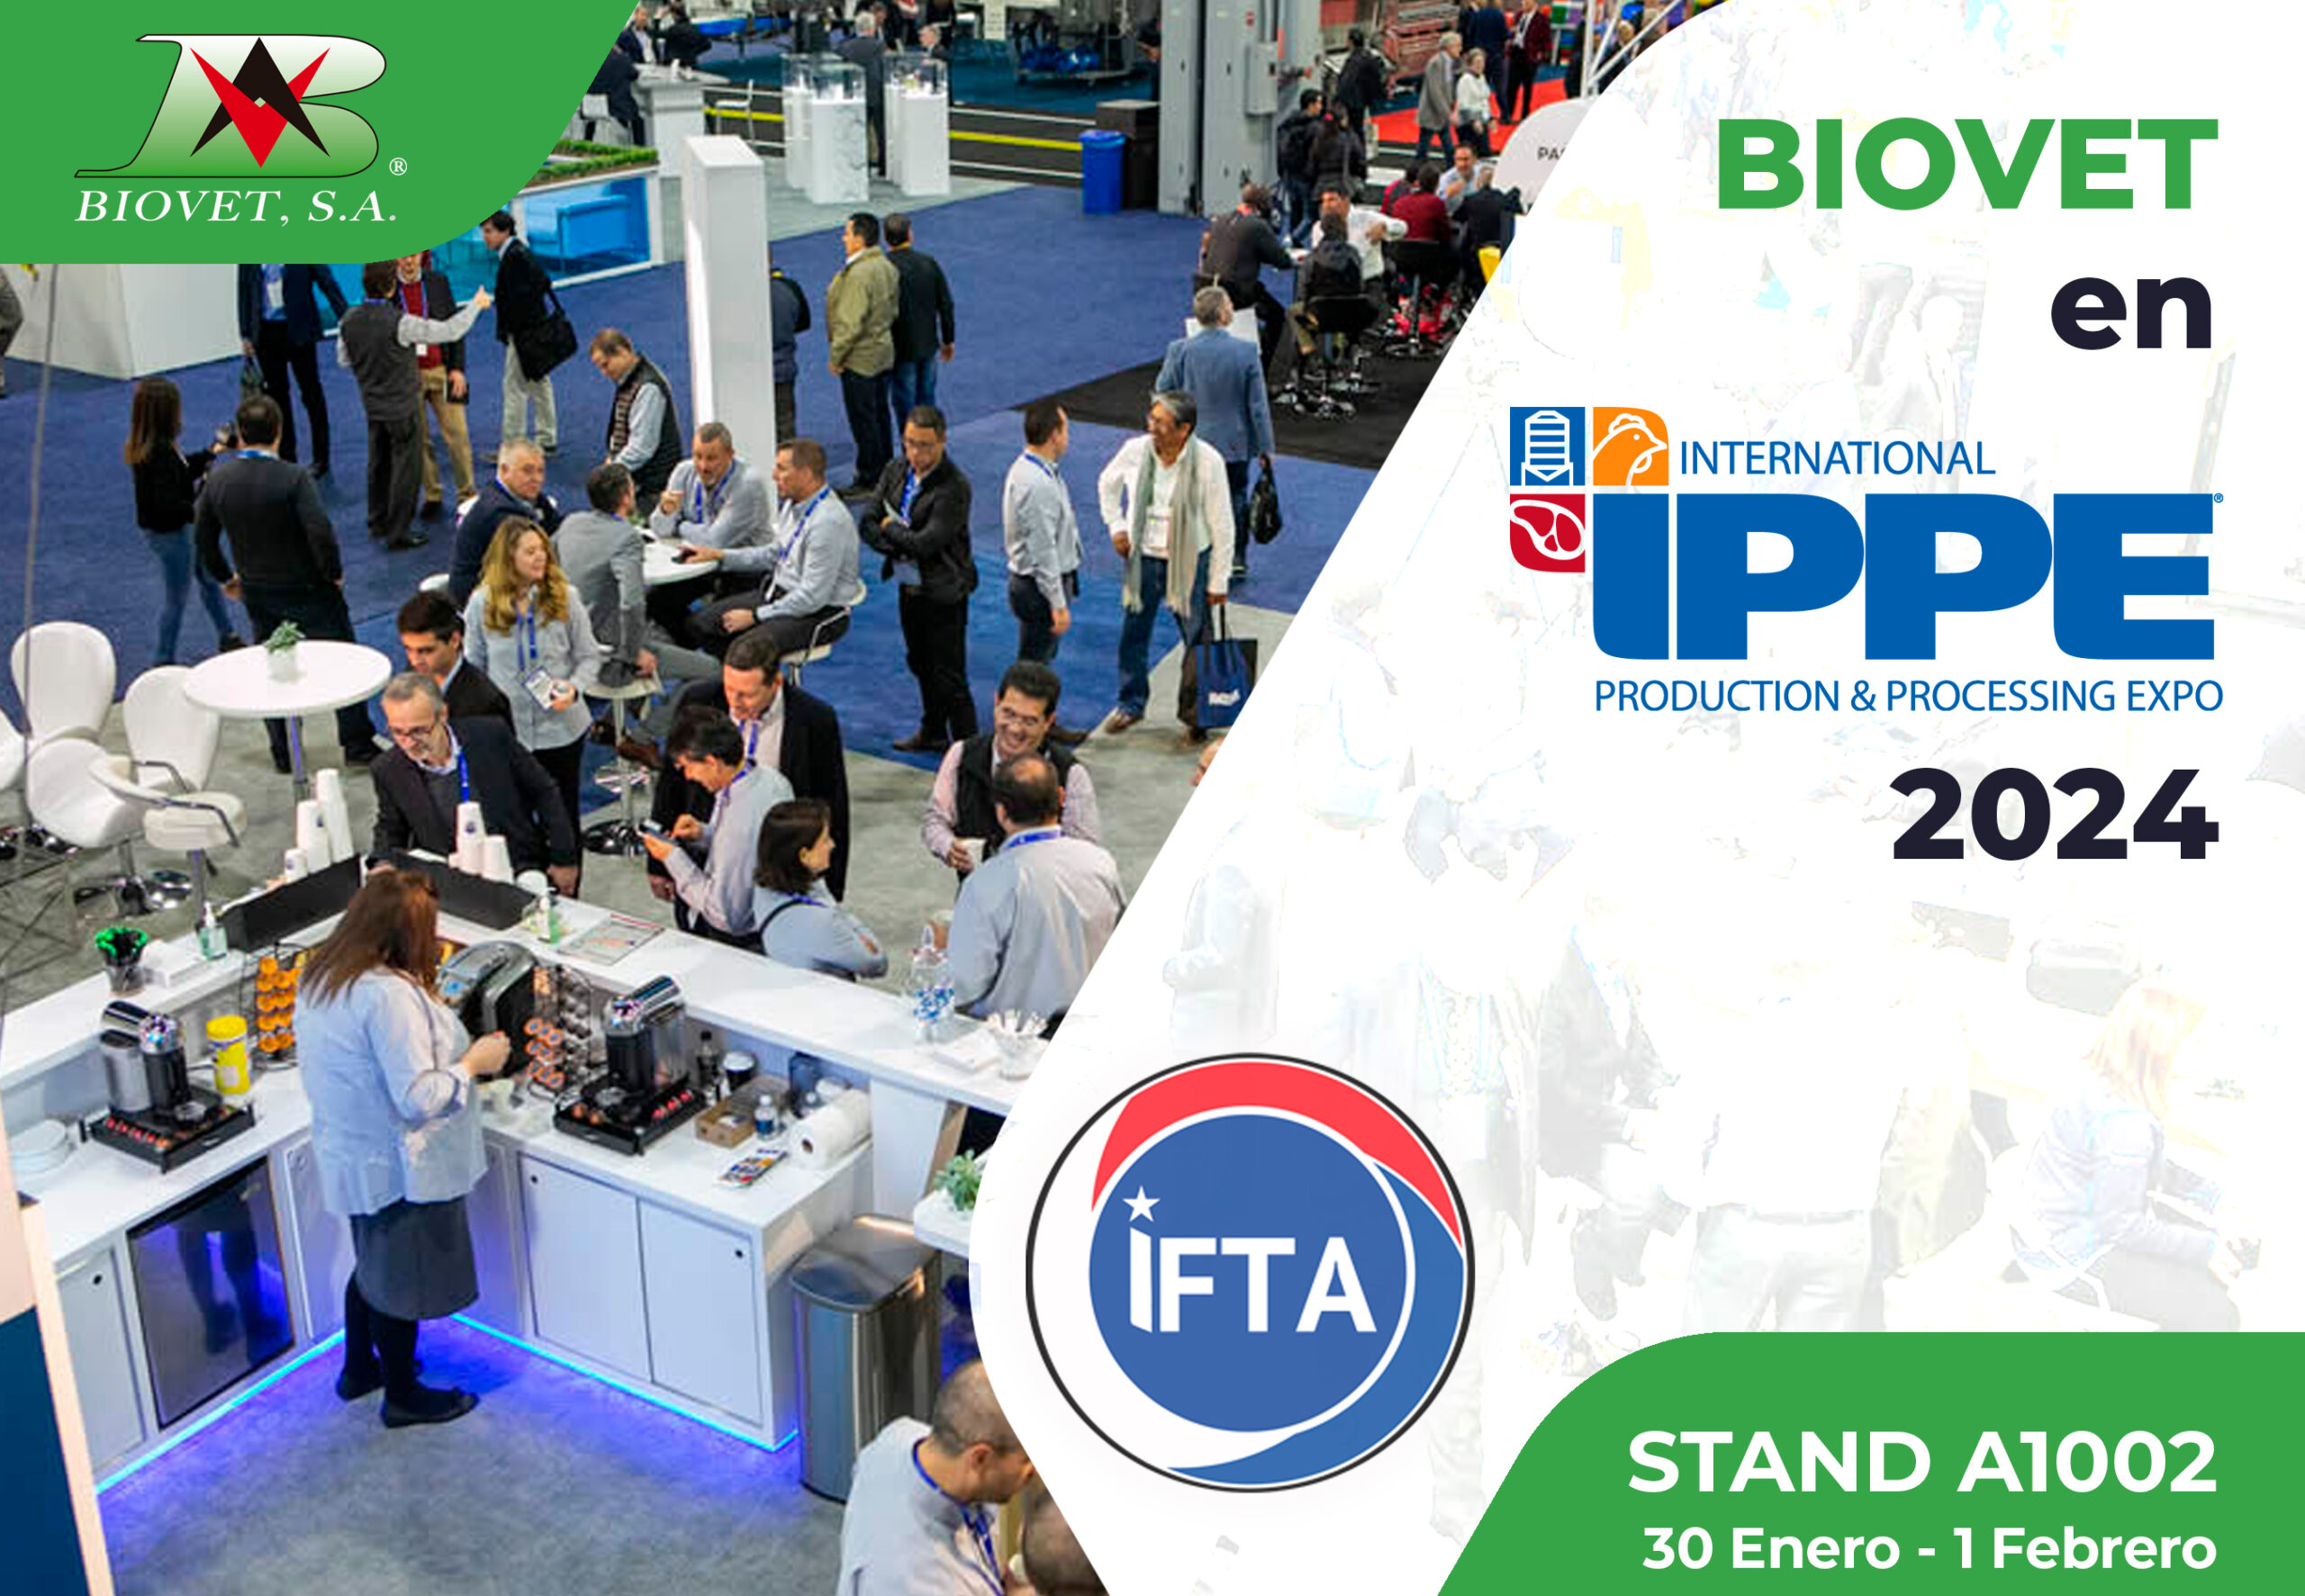 Biovet S.A. participará en IPPE con sus últimas tecnologías y una conferencia científica